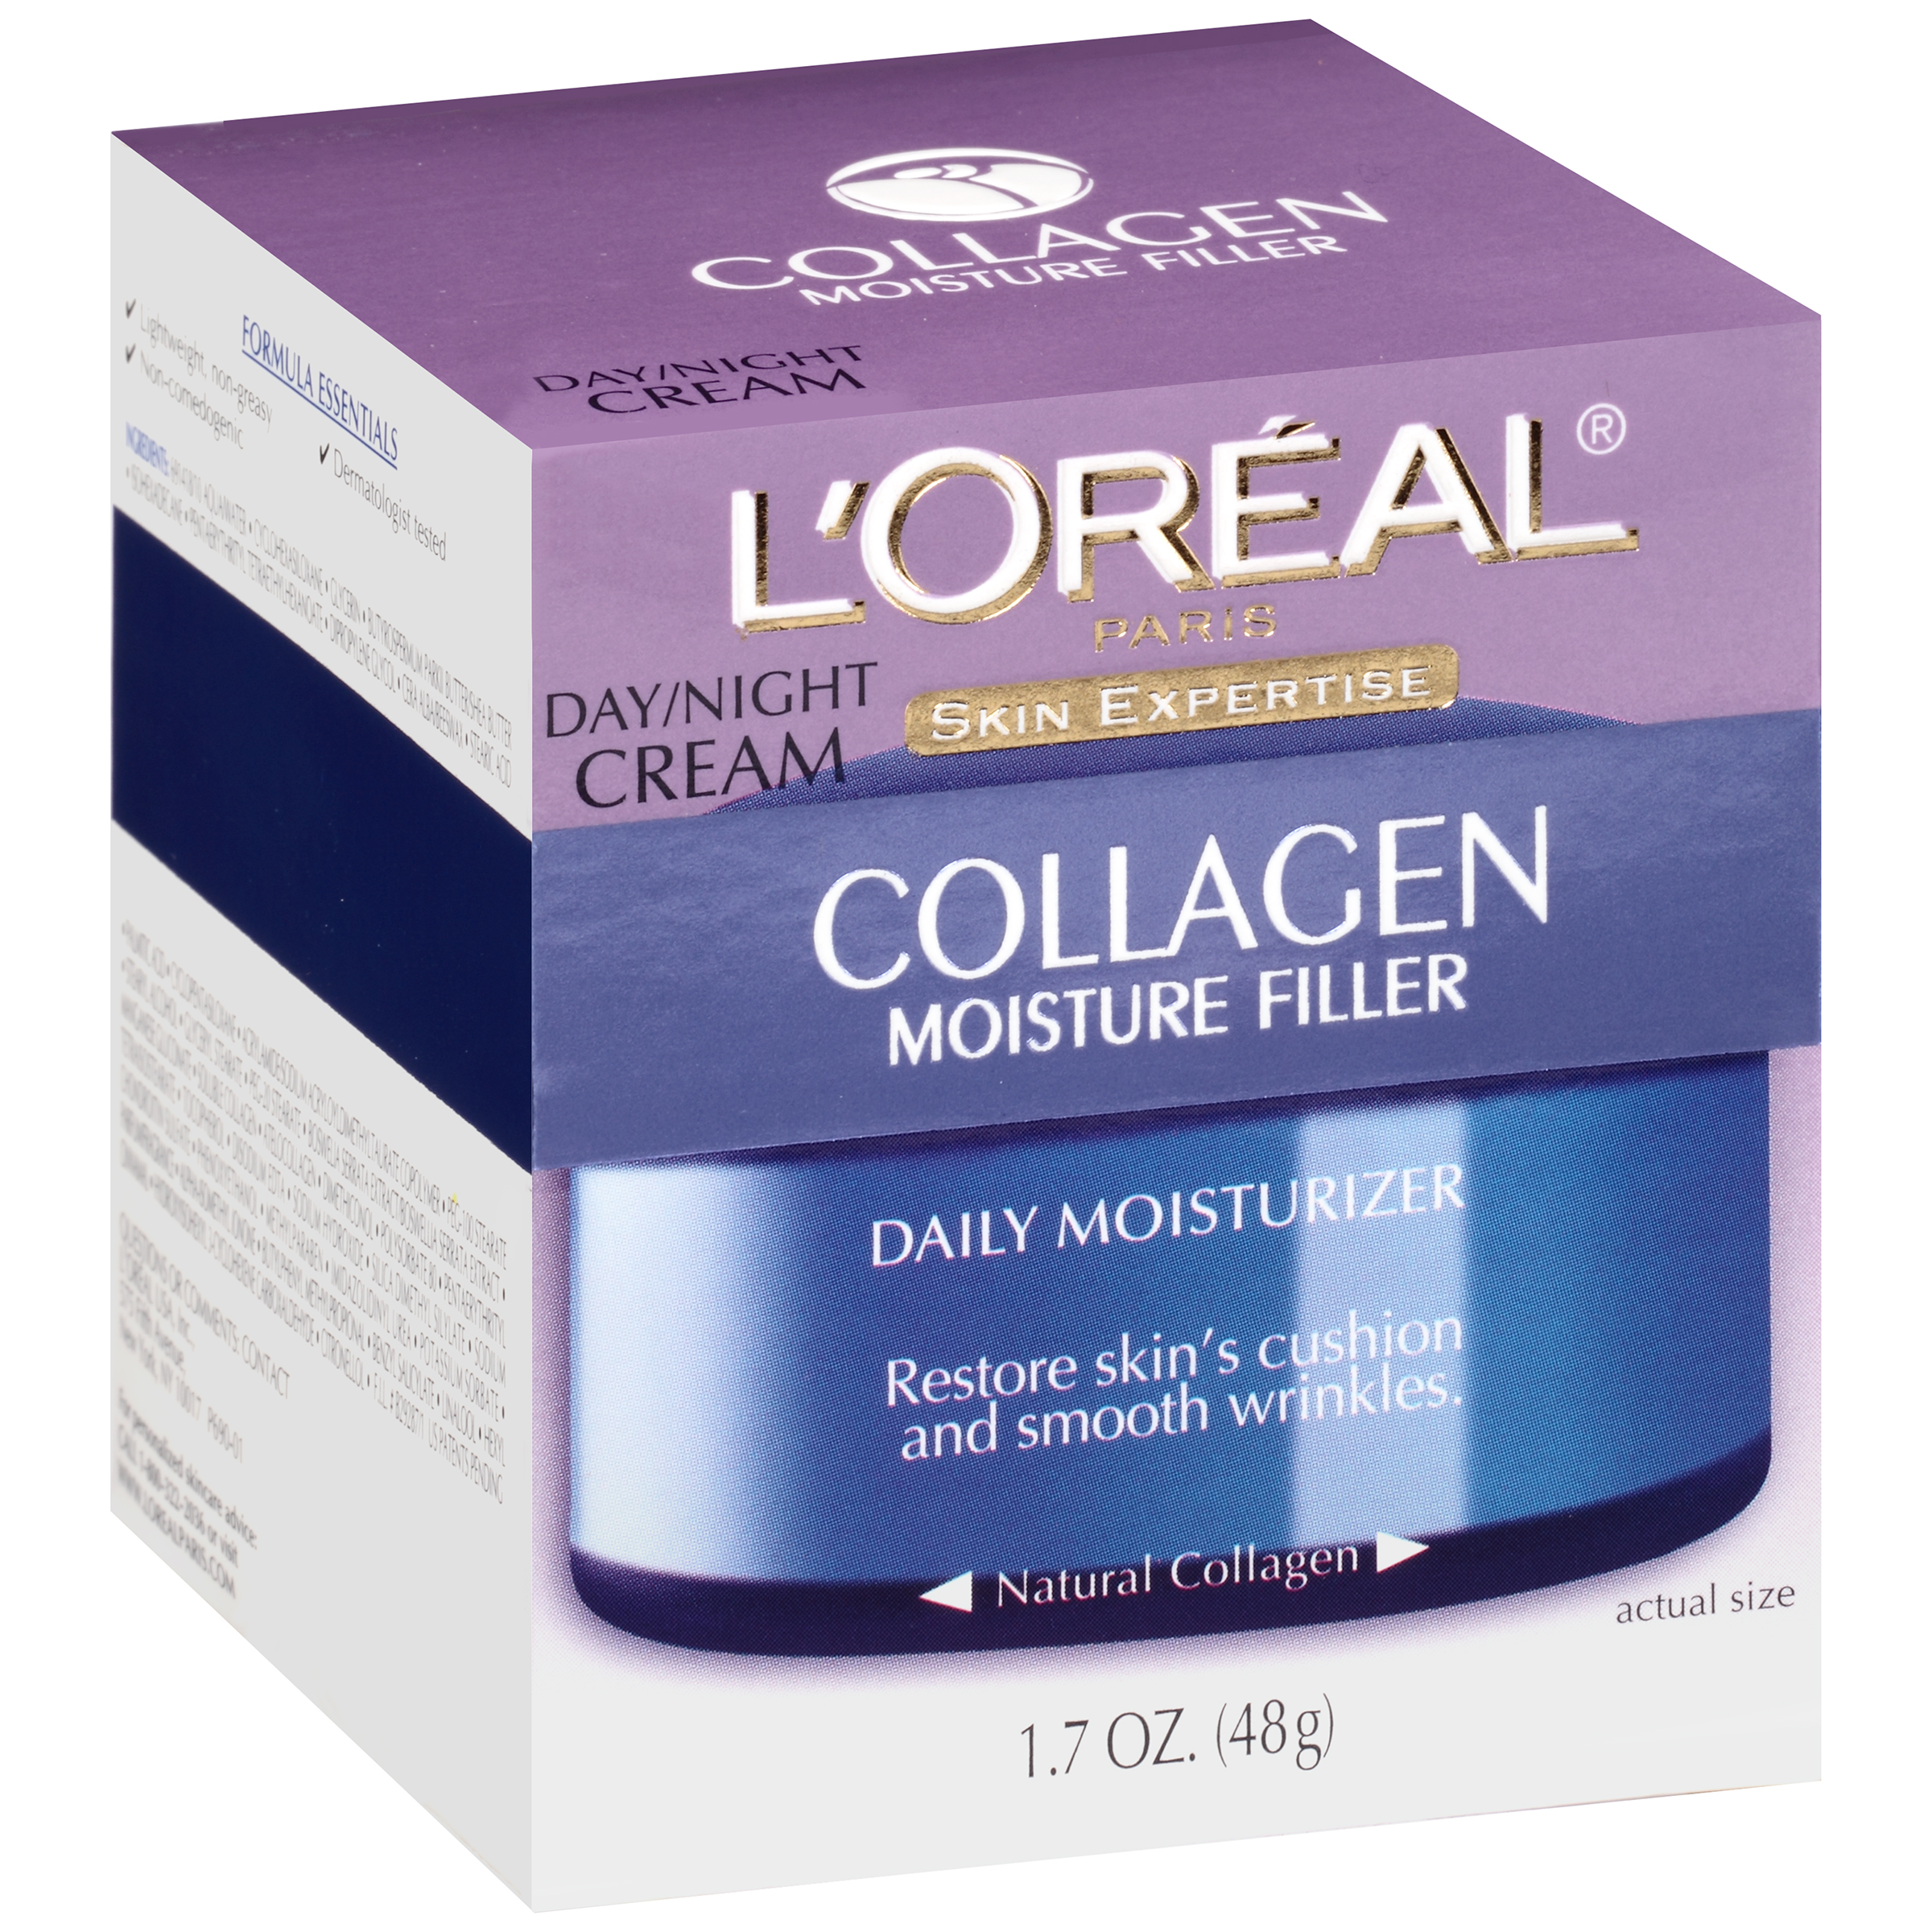 L'Oreal Skin Expertise Daily Moisturizer, Day/Night Cream, Collagen Moisture Filler, 1.7 oz (48 g)